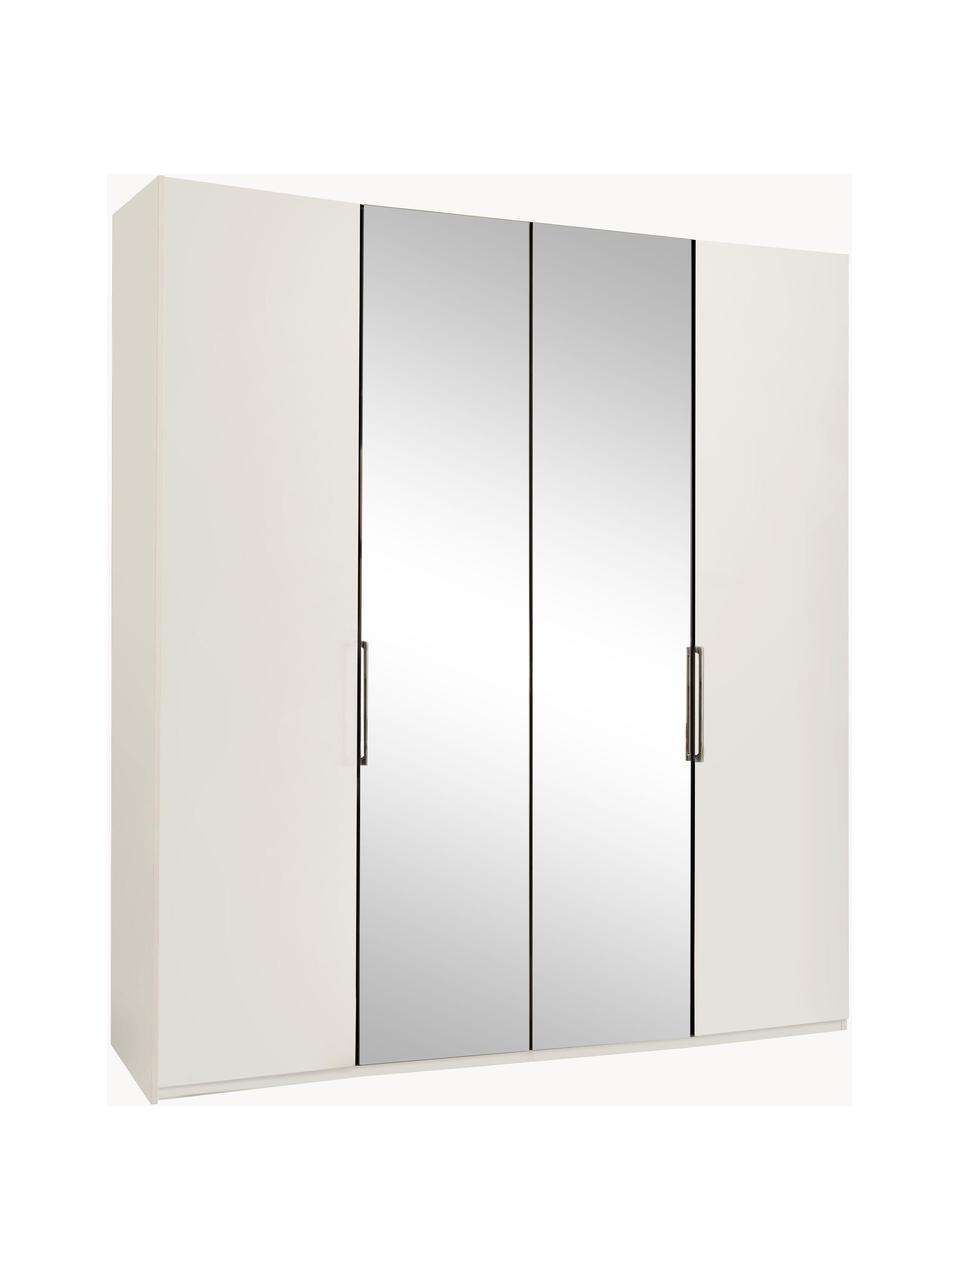 Draaideurkast Monaco met spiegeldeuren, 4 deuren, Handvatten: gecoat metaal, Wit, met spiegeldeuren, B 200 x H 216 cm